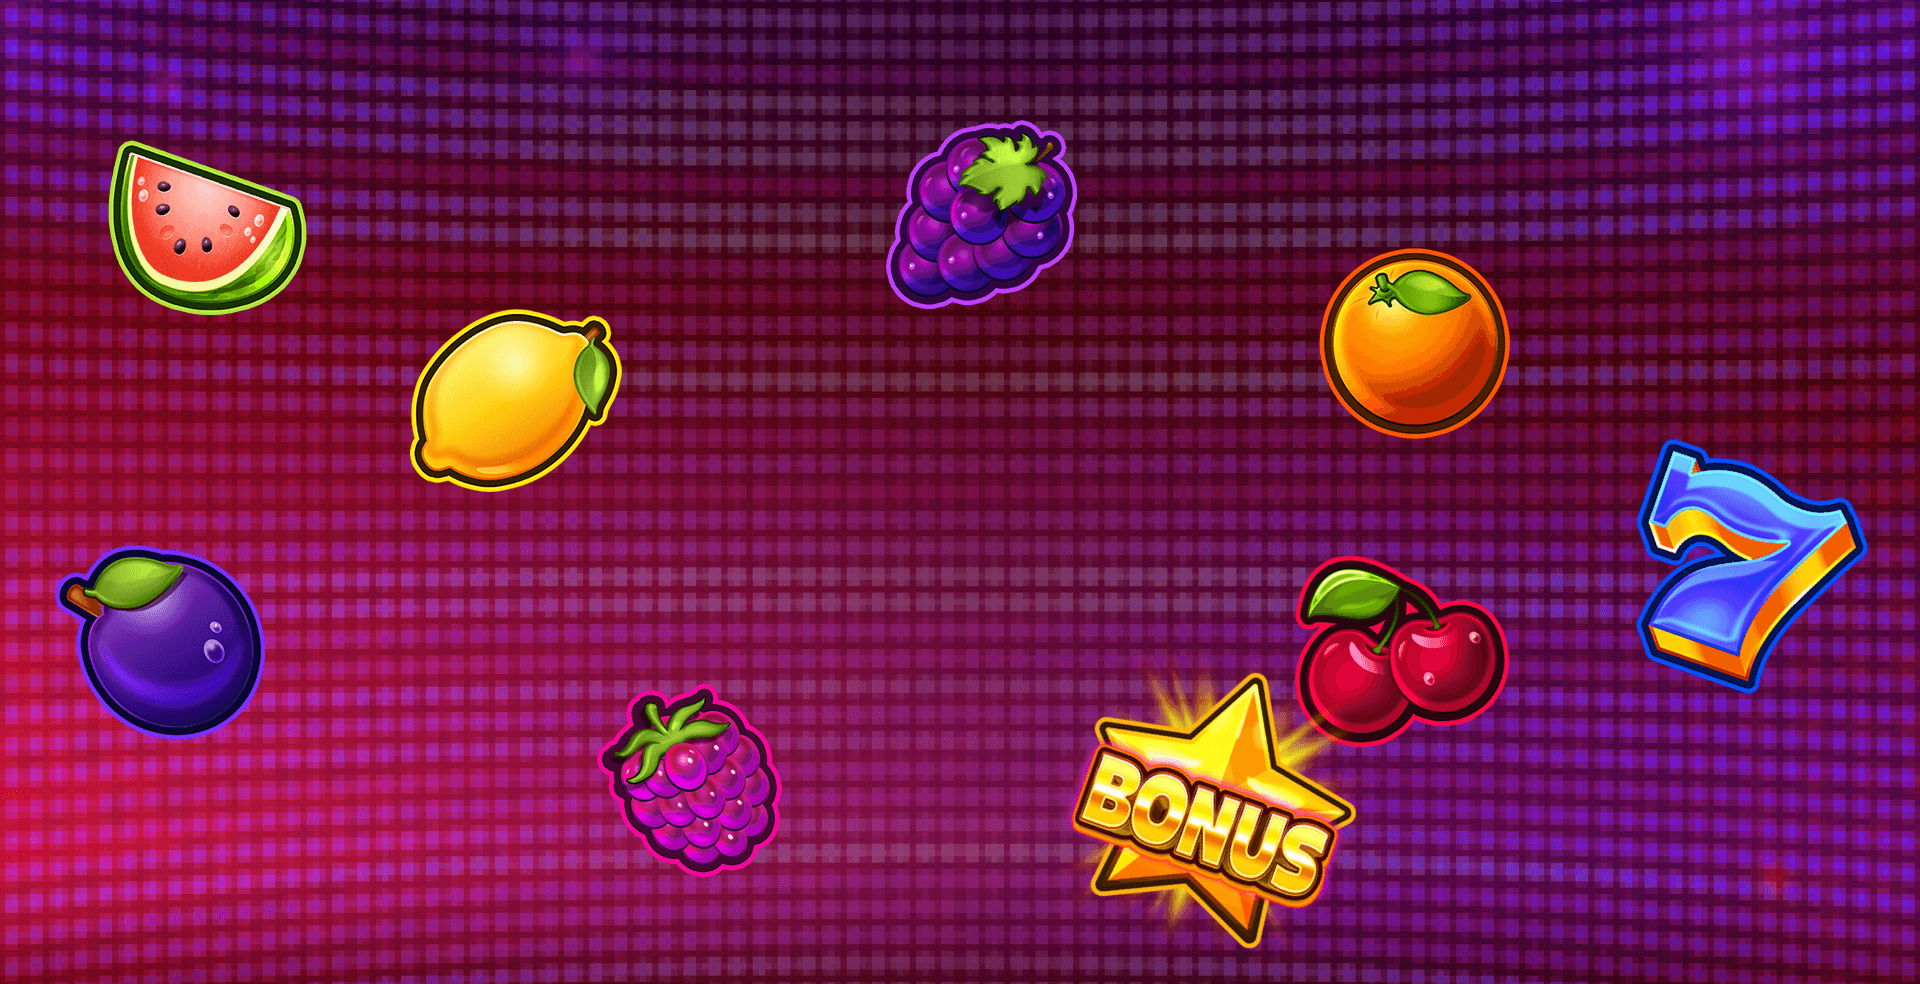 Bonus Fruits